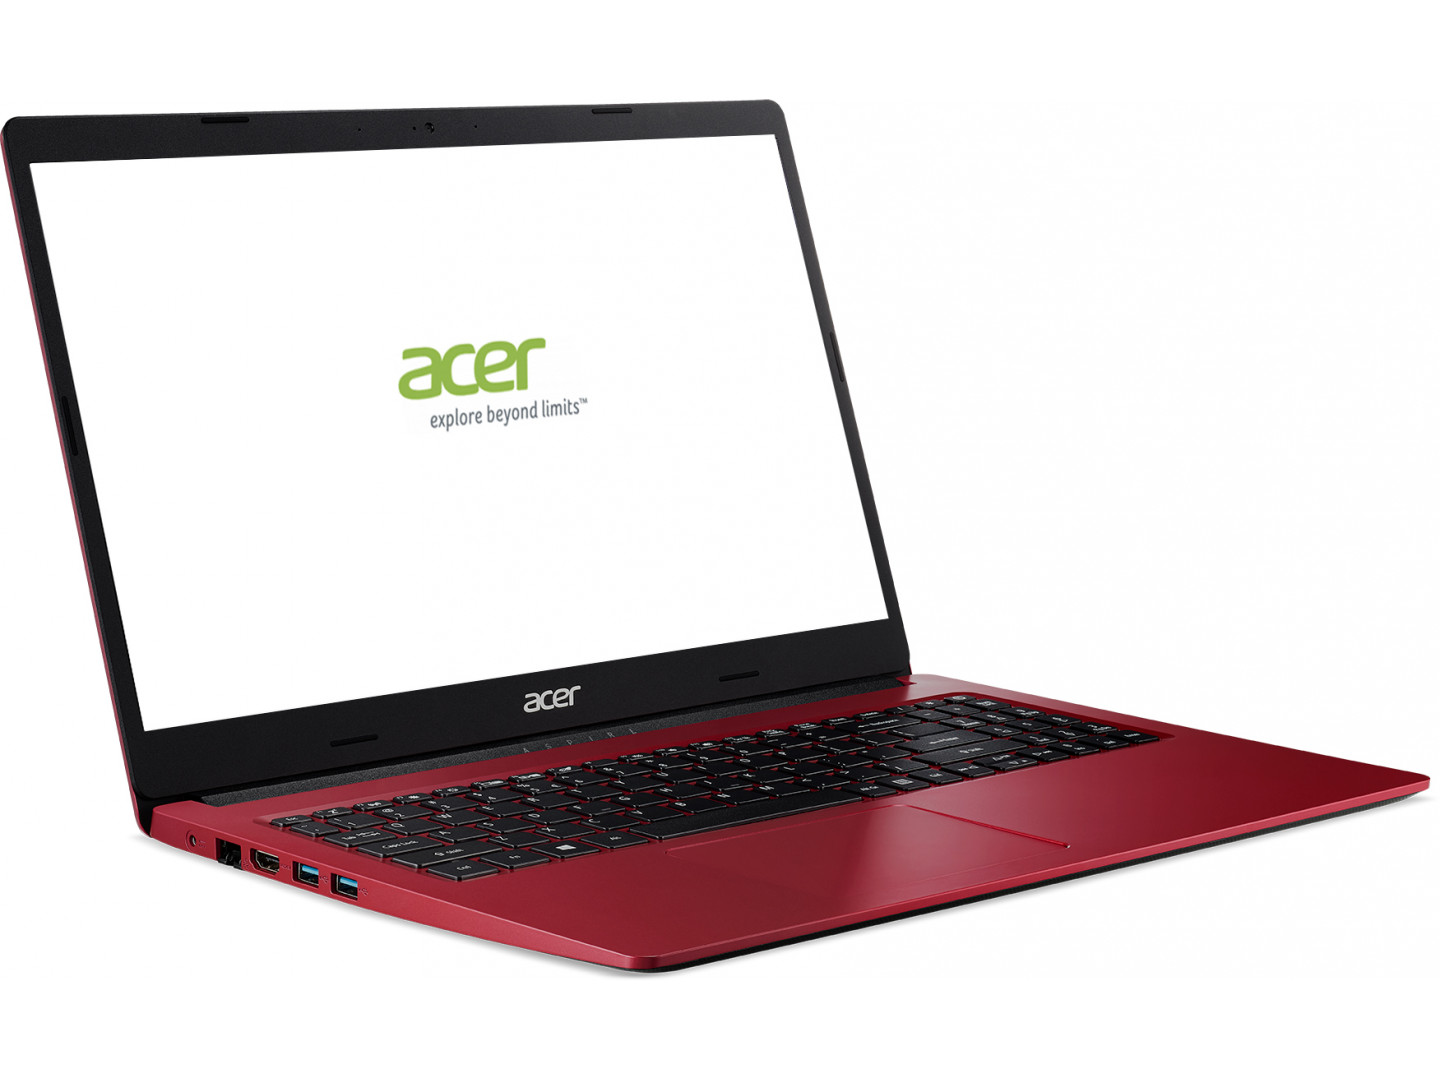 Aspire сколько стоит. Acer a315-55g. Acer Aspire 3 a315-55g. Асер красный ноутбук i5 GEFORCE 920m. Ноутбук Acer Aspire 3 красный.